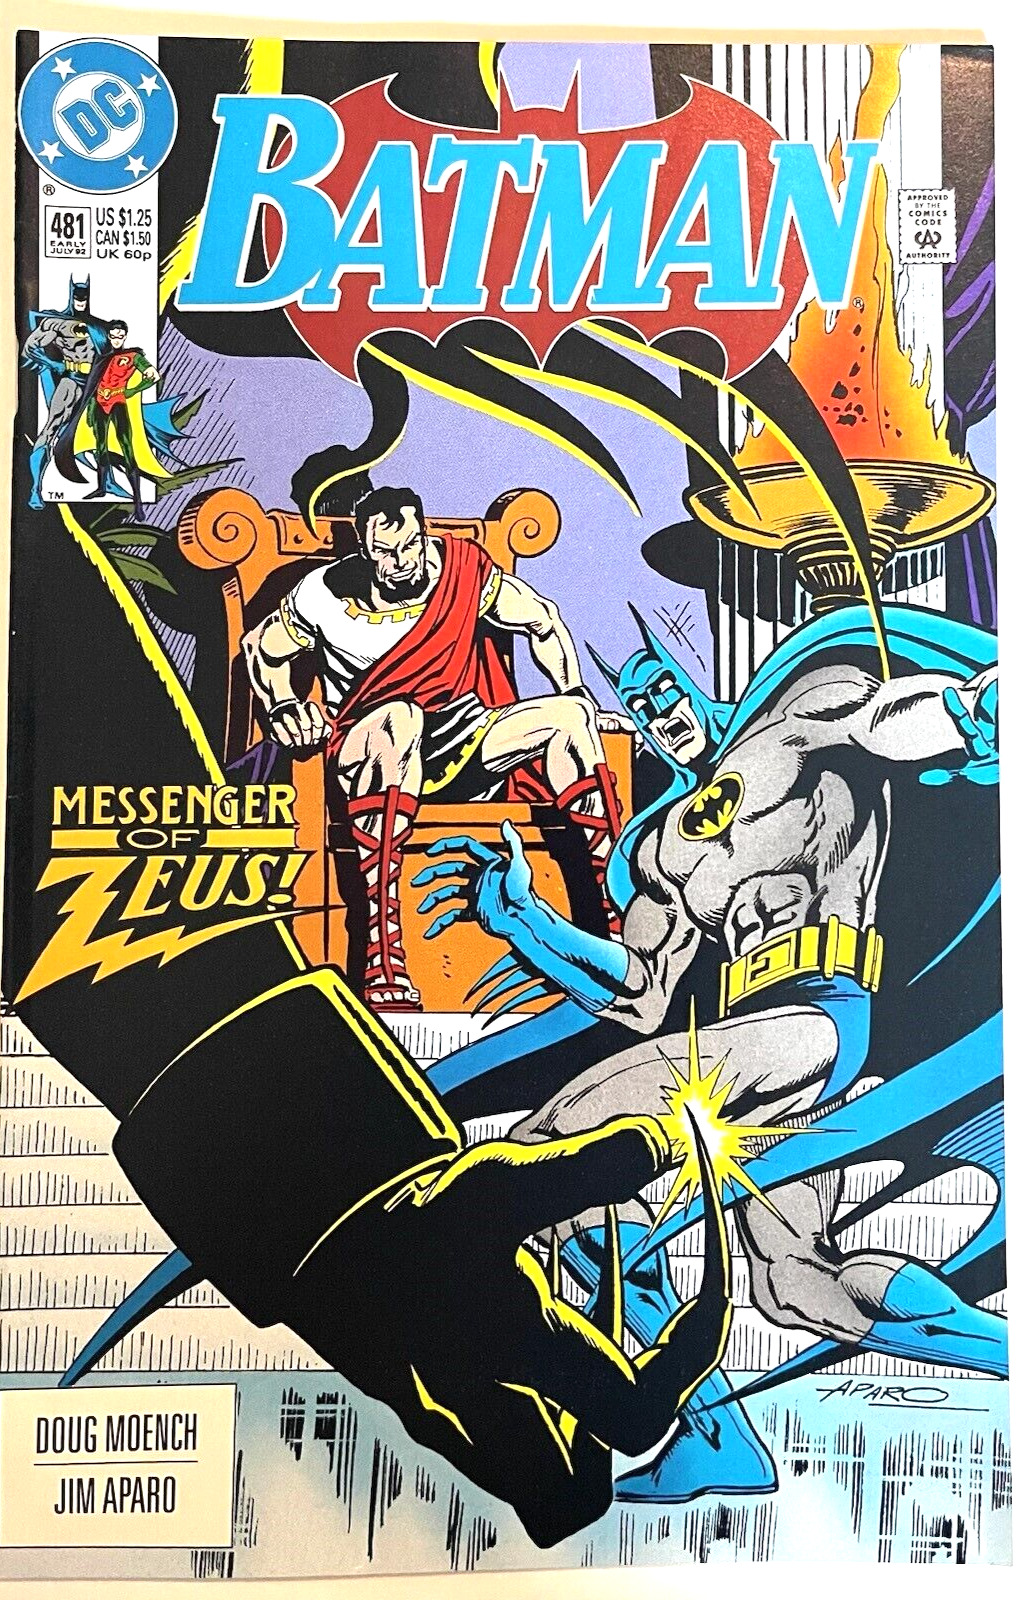 BATMAN #481 CVR A 1992 DC COMICS VF+